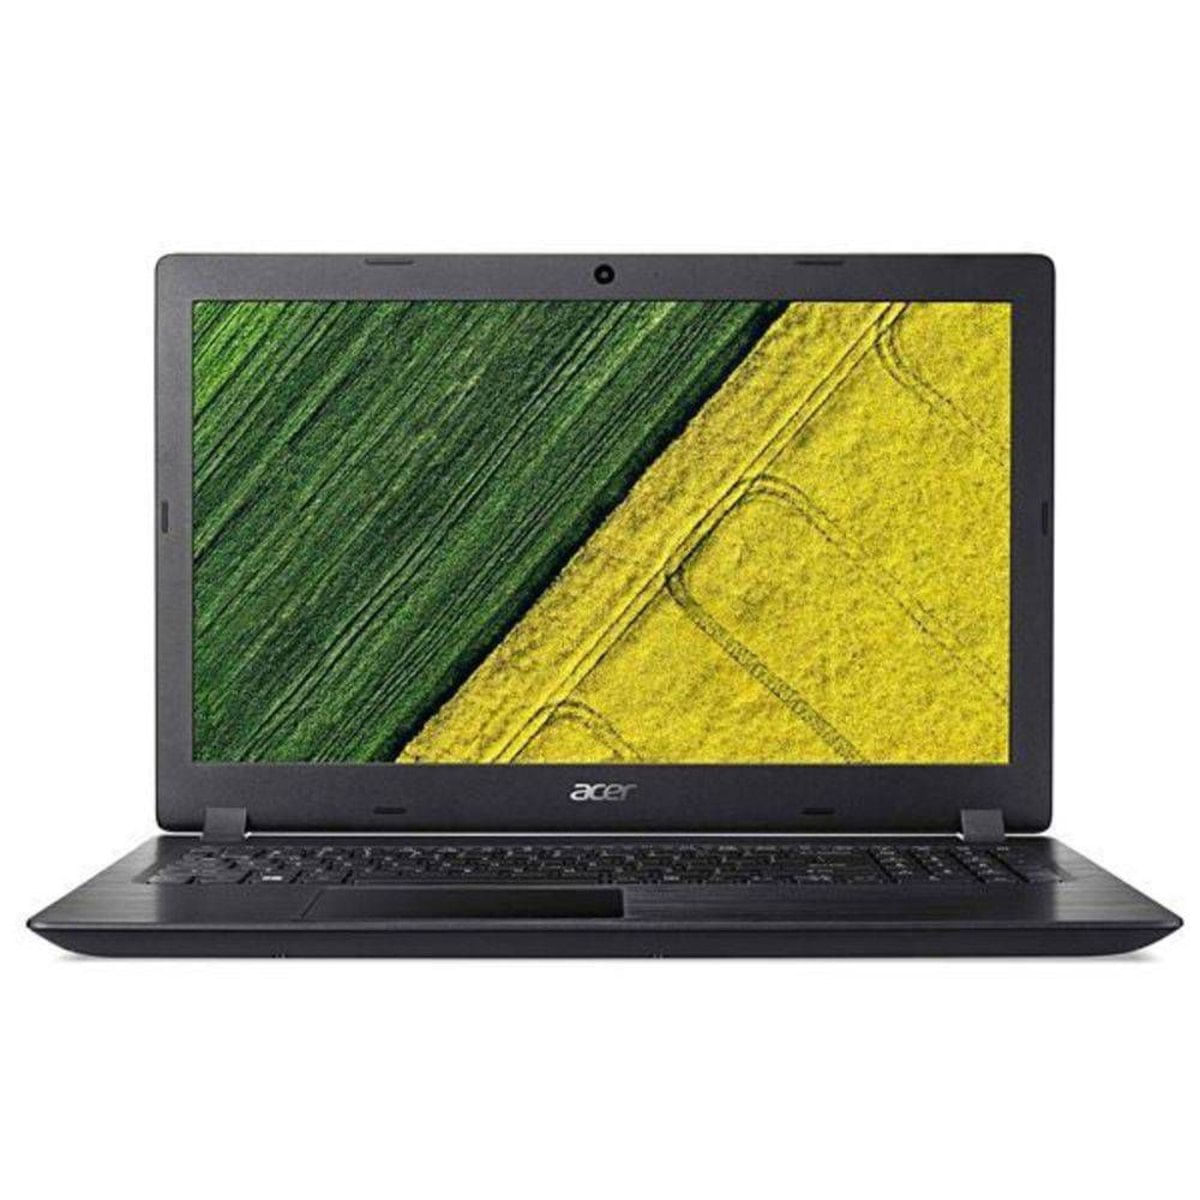 Notebook - Acer A315-51-31gk I3-7100u 2.40ghz 4gb 1tb Padrão Intel Hd Graphics 620 Windows 10 Home Aspire 3 15,6" Polegadas